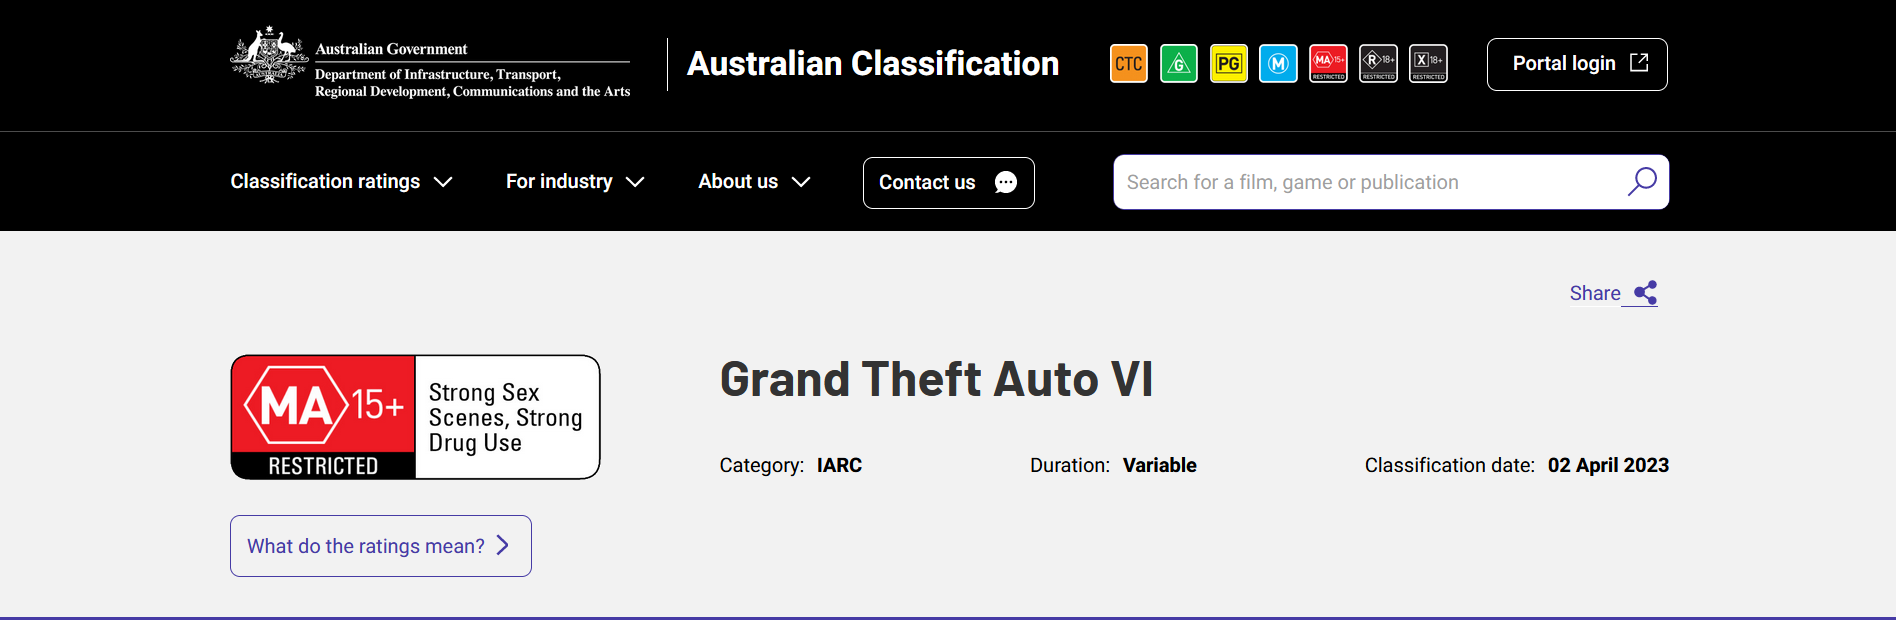 New leak claims Australian Govt. rating for GTA VI – genuine or